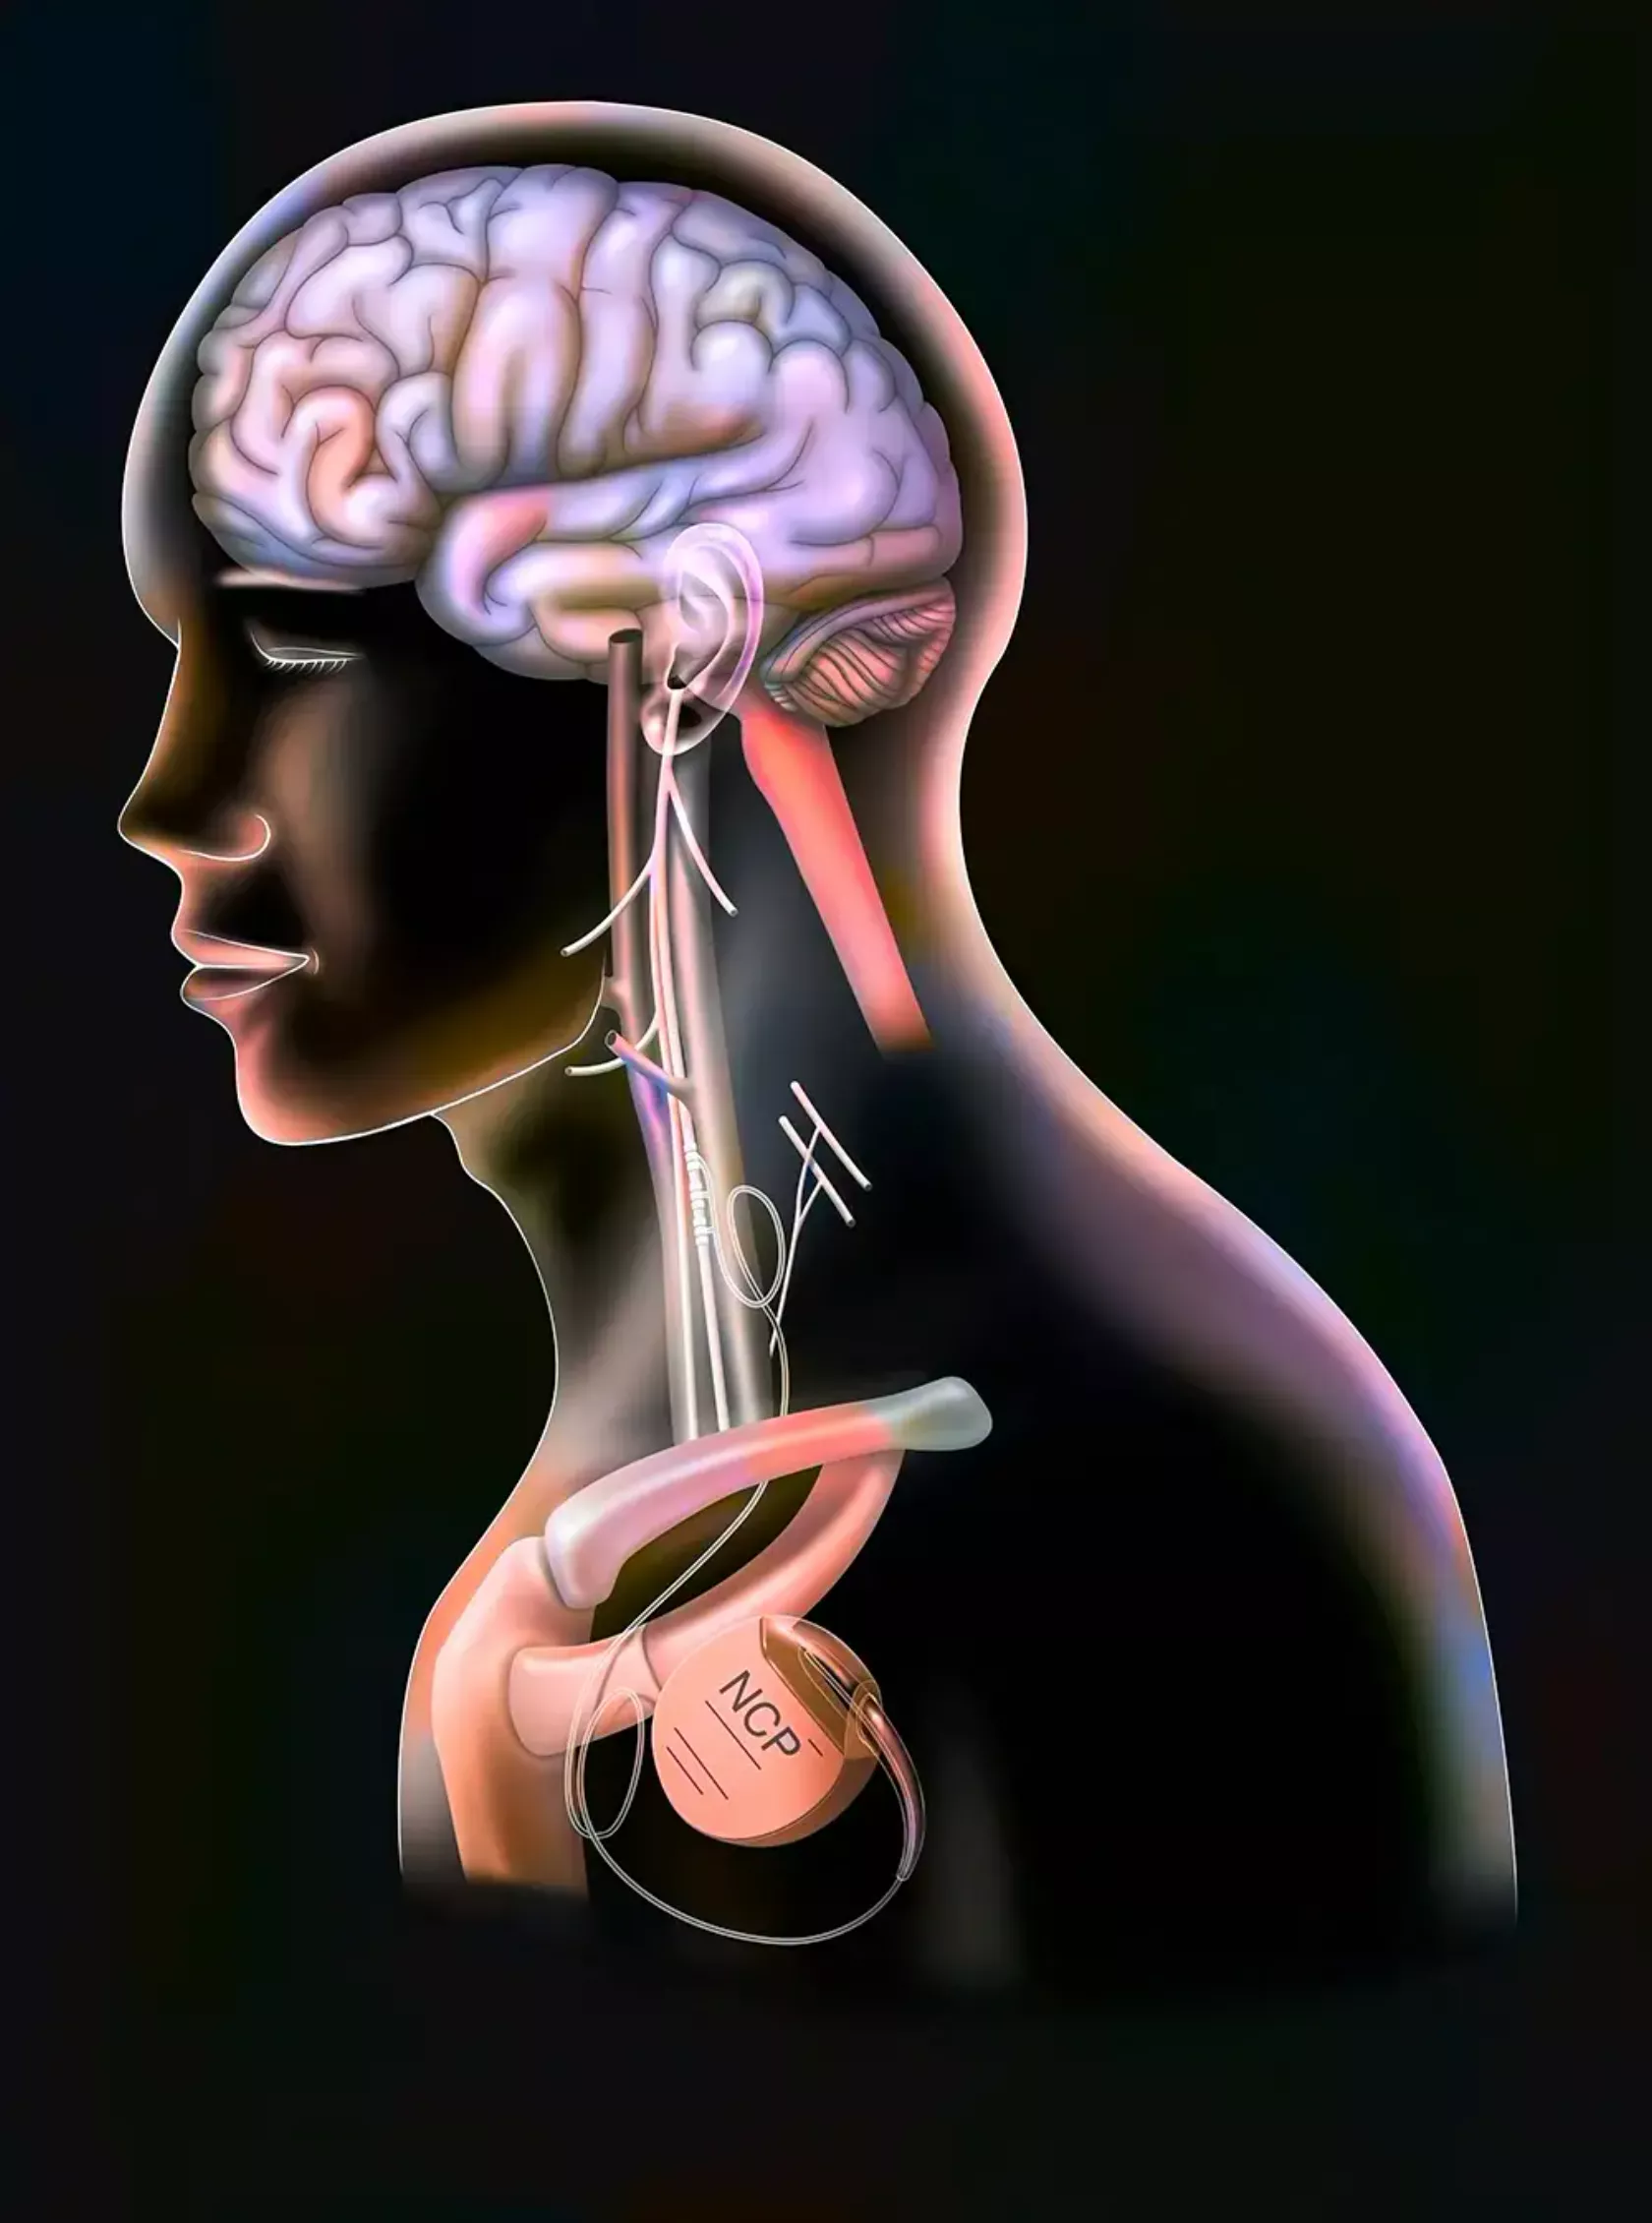 KI-Darstellung eines Menschen im Querschnitt mit Fokus auf Gehirn und Nervenbahnen.